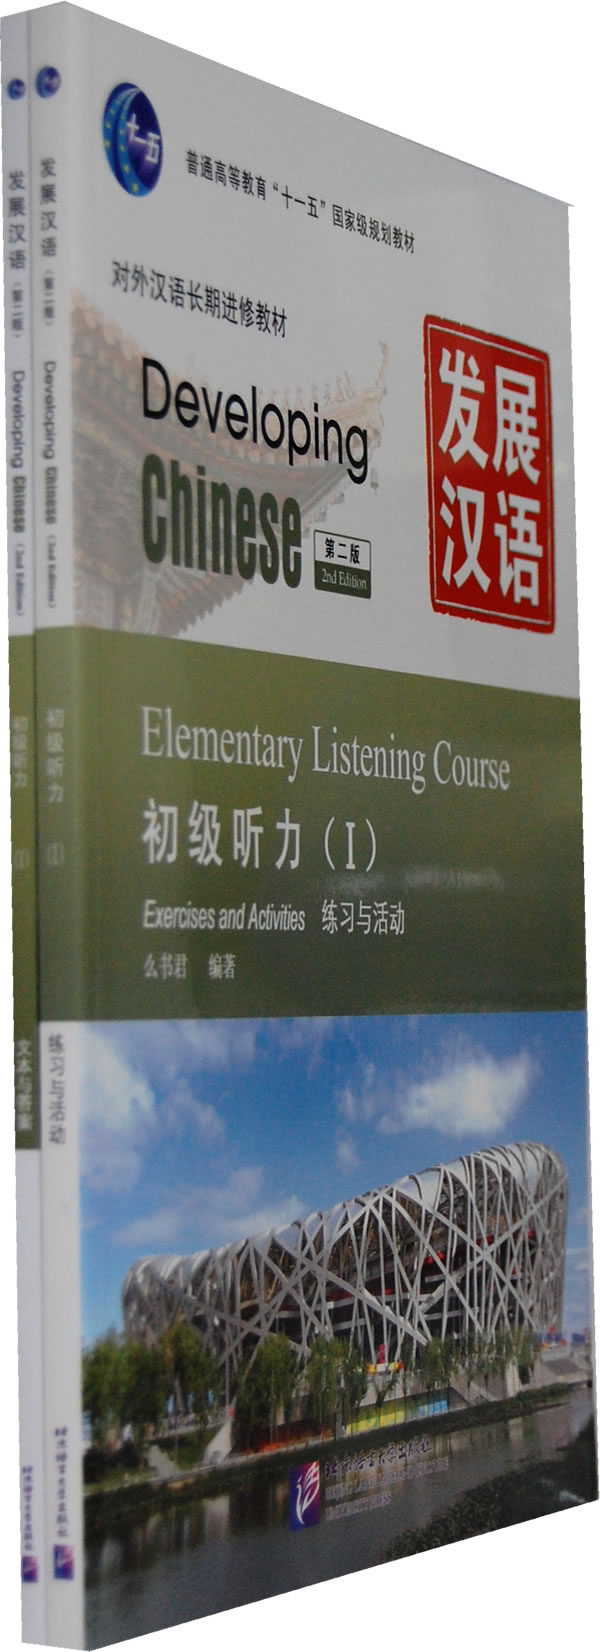 初级听力-发展汉语-(I)-第二版